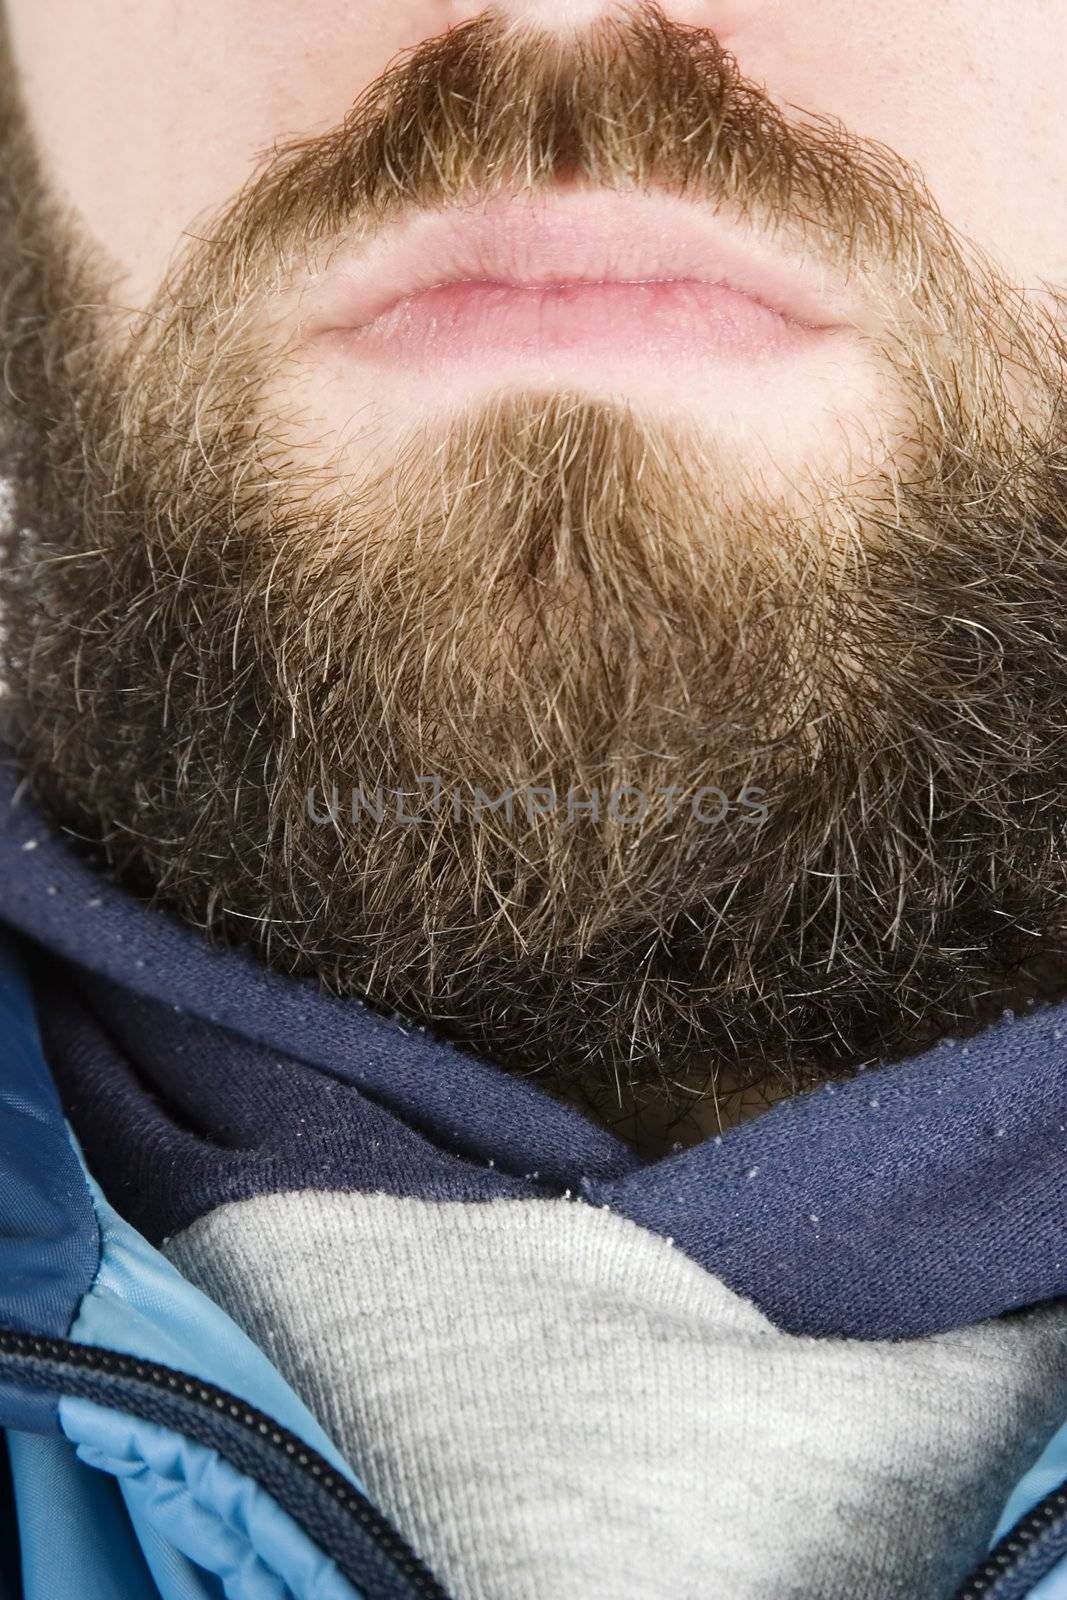 Beard Close Up by leaf